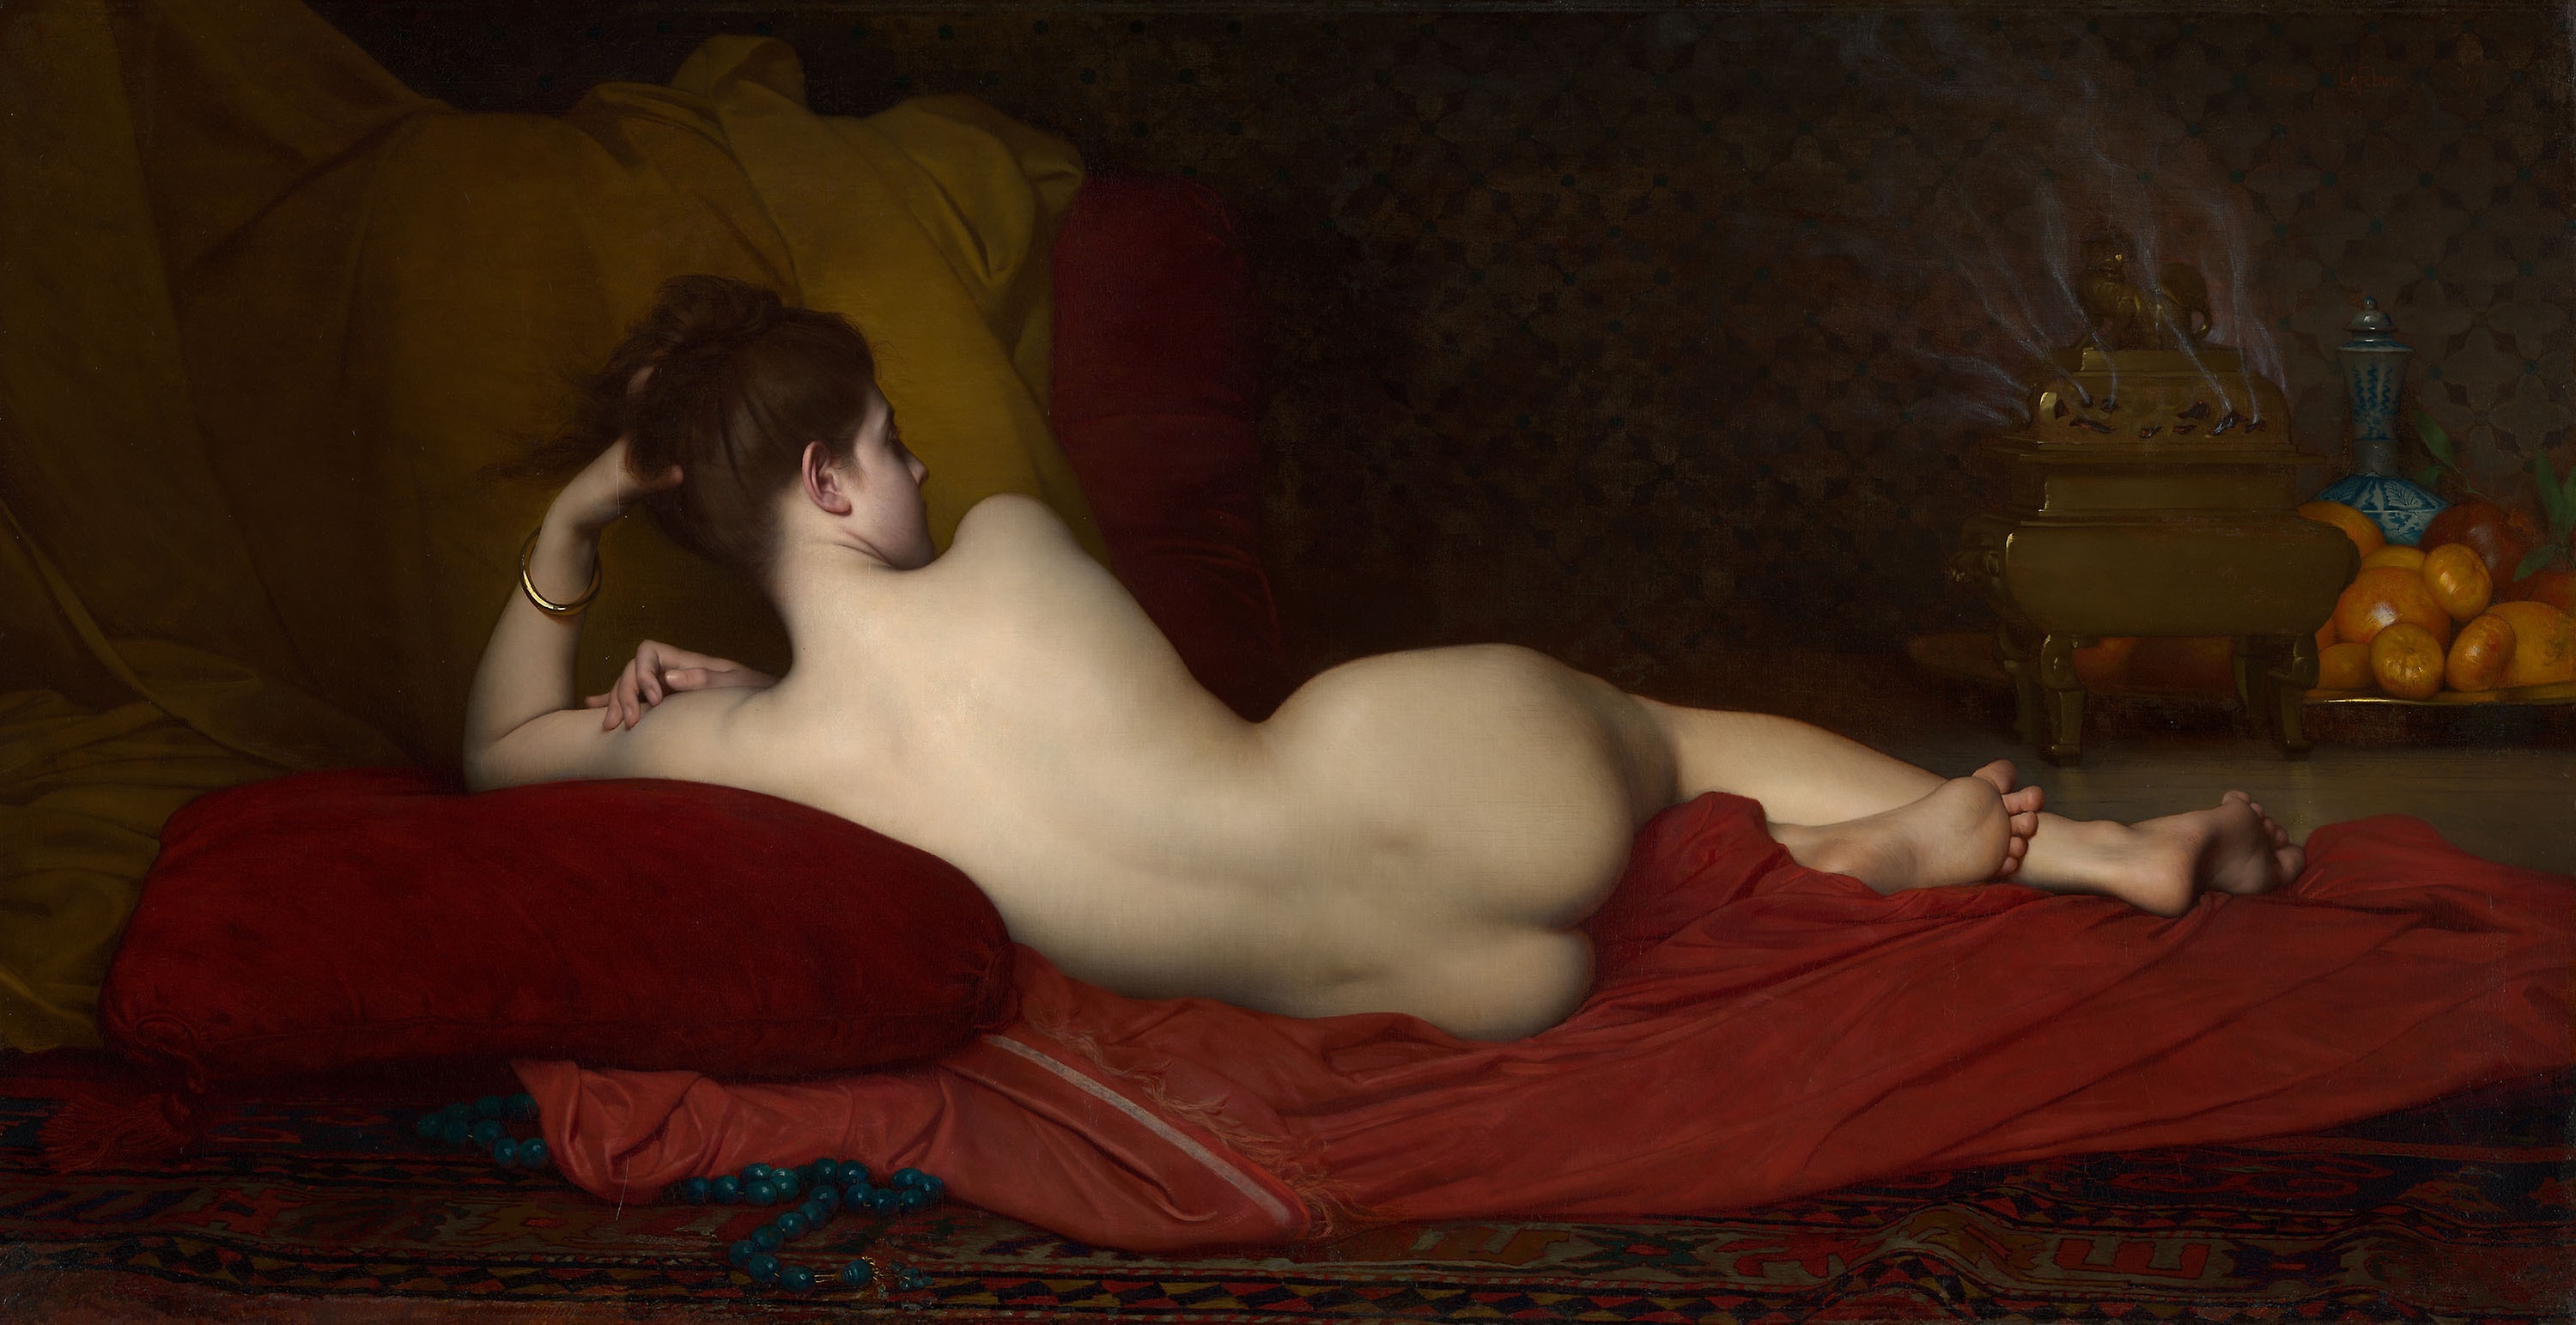 女奴 by Jules Lefebvre - 1874 - 102.4 × 200.7 cm 